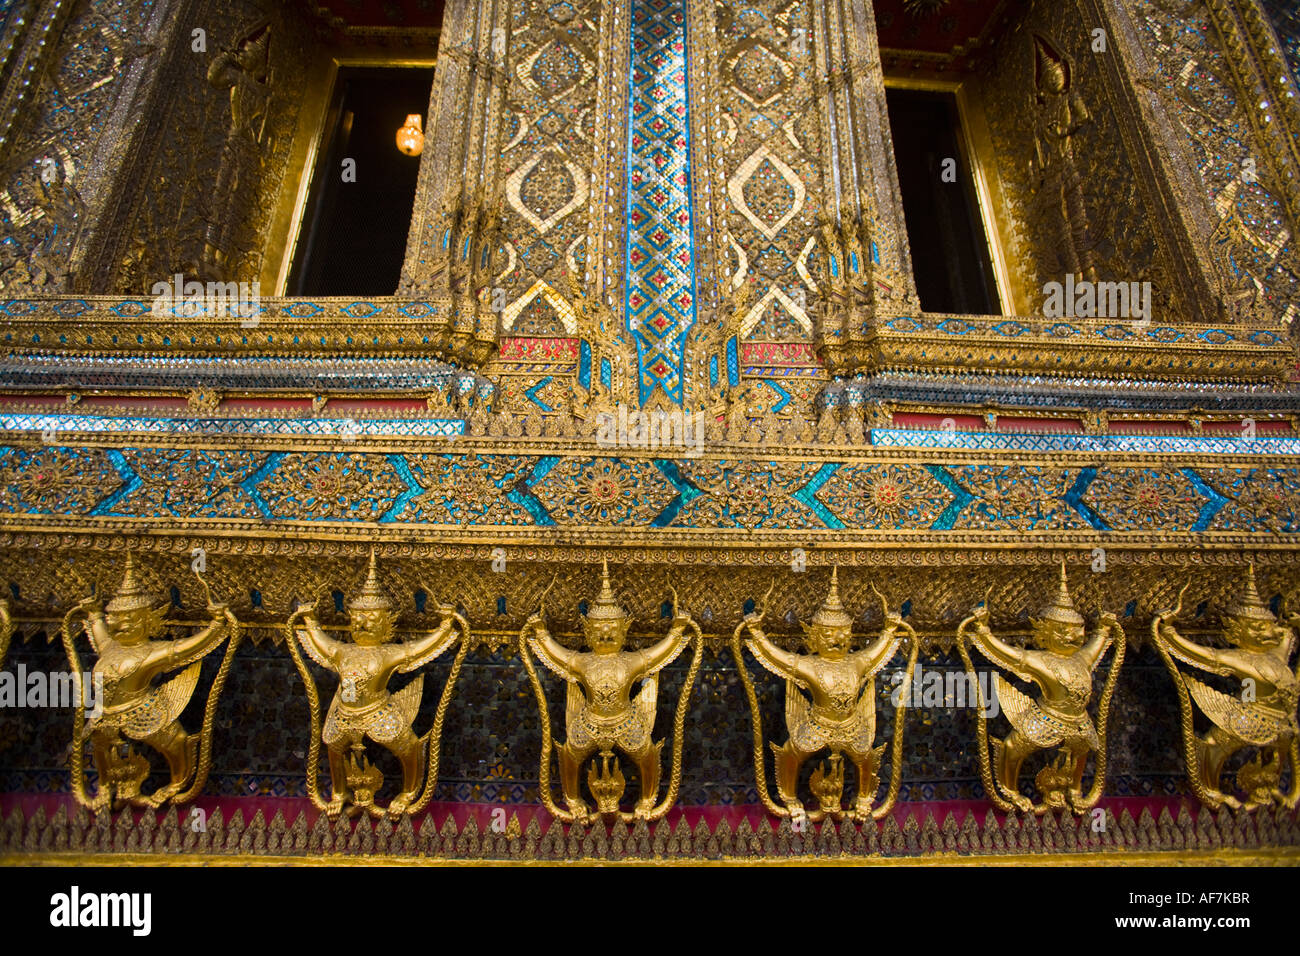 Abbildungsreihe zeigt Garuda König der Vögel halten Naga des Königs der Schlangen, Wasser im Grand Palace, Bangkok, Thailand Stockfoto